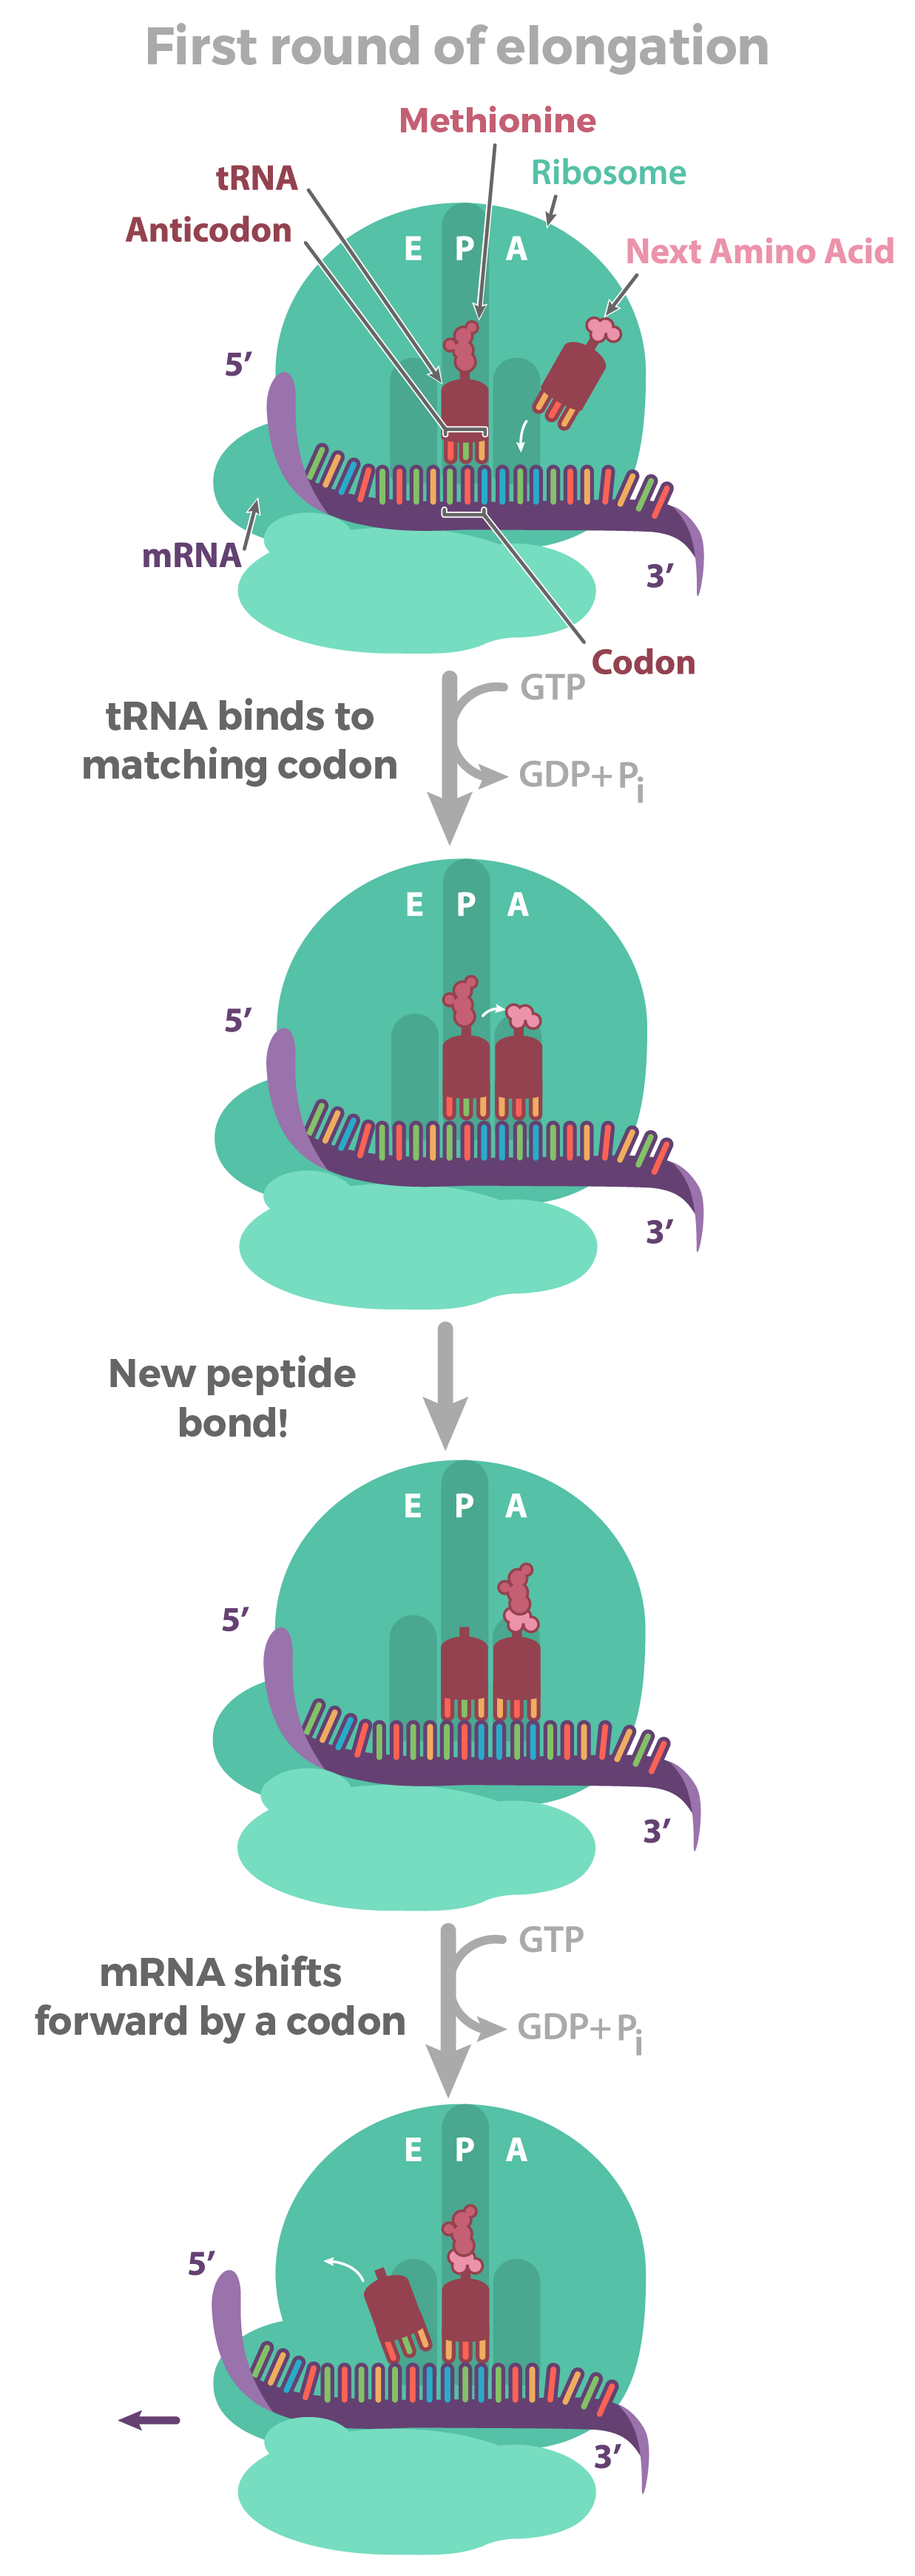 Na primeira rodada de alongamento, um aminoácido de entrada se anexa à metionina já presente no sítio P do ribossomo. Essa ação inicia o crescimento do polipeptídeo. As três etapas dessa primeira rodada de alongamento são descritas abaixo.

1) Reconhecimento de códon: um RNAt de entrada com um anticódon que é complementar ao códon exposto no sítio A se liga ao RNAm. A energia do GTP é gasta para aumentar a acurácia do reconhecimento de códons.

2) Formação da ligação peptídica: uma ligação peptídica é formada entre o aminoácido de entrada (transportado por um RNAt no sítio A) e uma metionina (um RNAt carregado com metionina anexado ao sítio P durante a iniciação). Essa ação passa o polipeptídeo (os dois aminoácidos ligados) do RNAt no sítio P ao RNAt no sítio A. O RNAt no sítio P agora está "vazio" porque não detém o polipeptídeo.

3) Translocação: o ribossomo move um códon sobre o RNAm na direção da extremidade 3'. Isso desloca o RNAt no sítio A para o sítio P, e o RNAt no sítio P para o sítio E. O RNAt vazio no sítio E então sai do ribossomo.